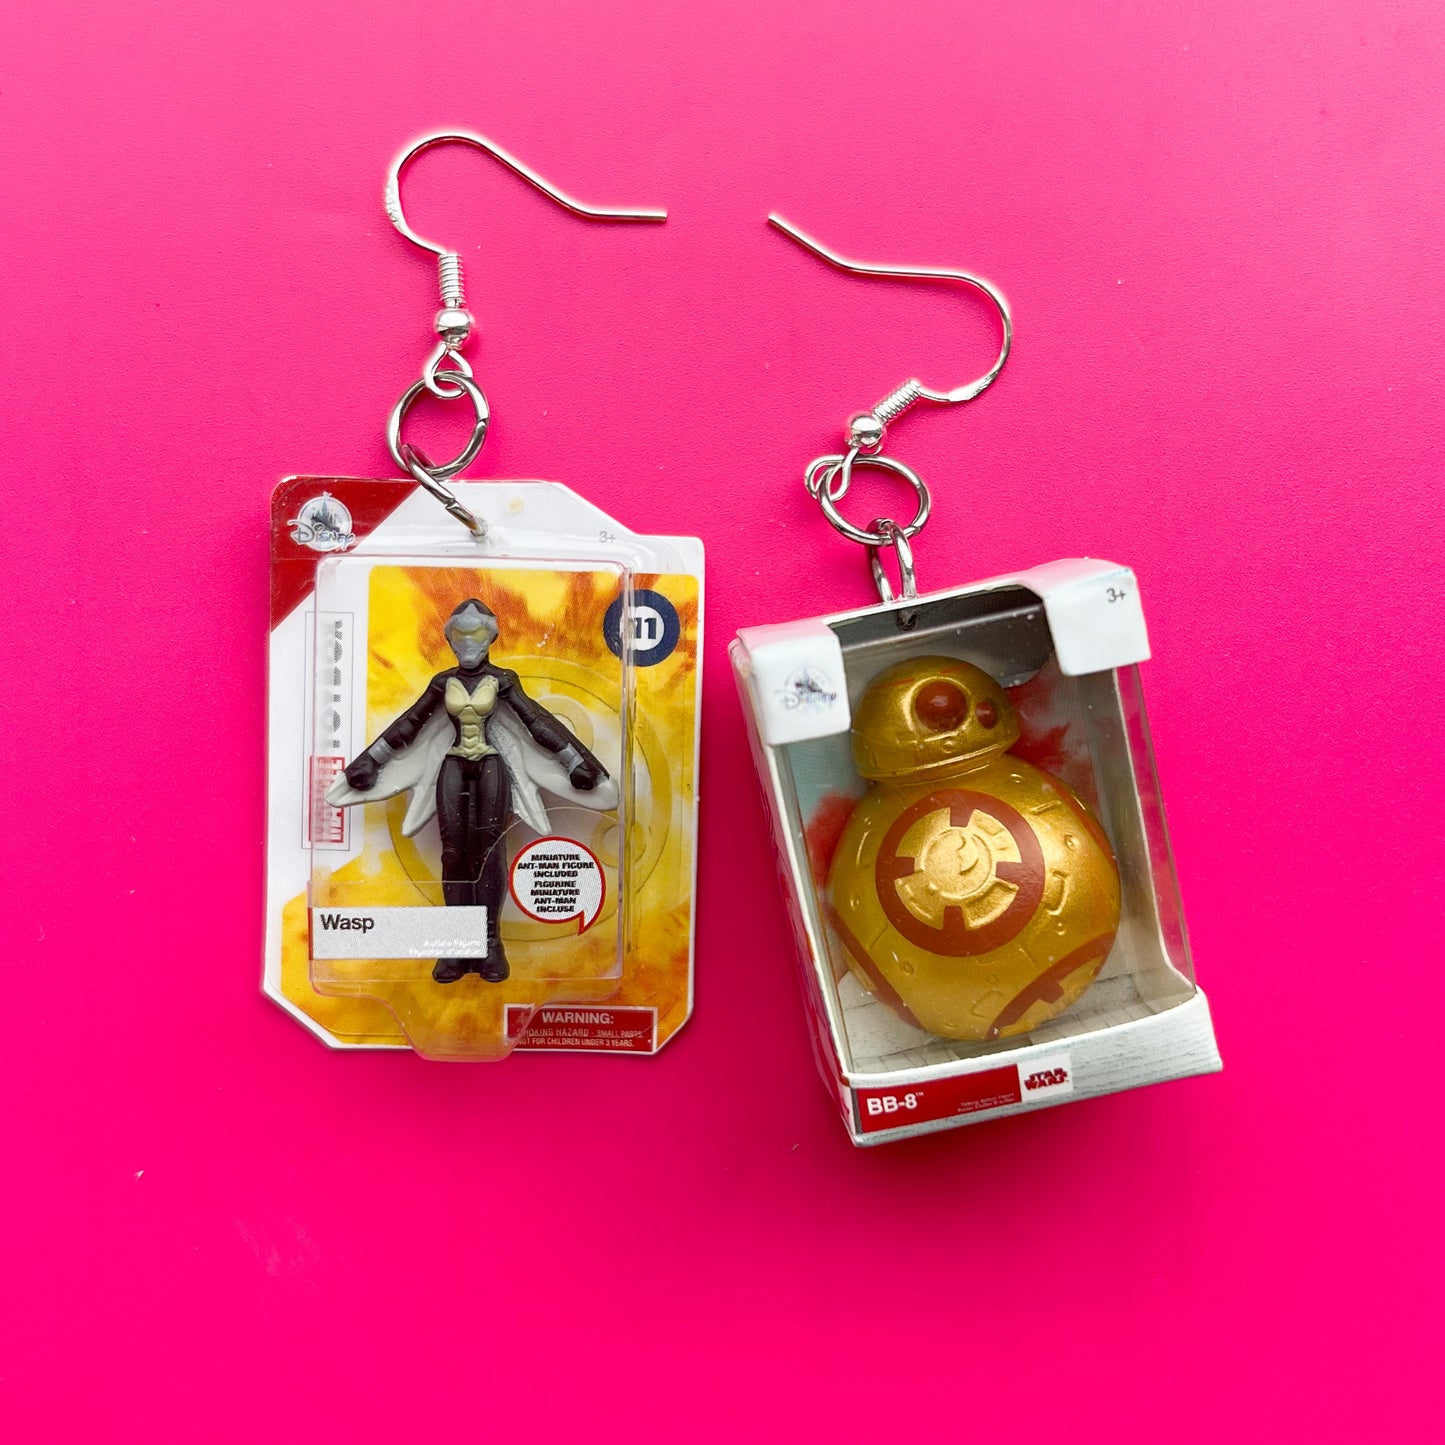 Wespe und BB-8 Ohrringe